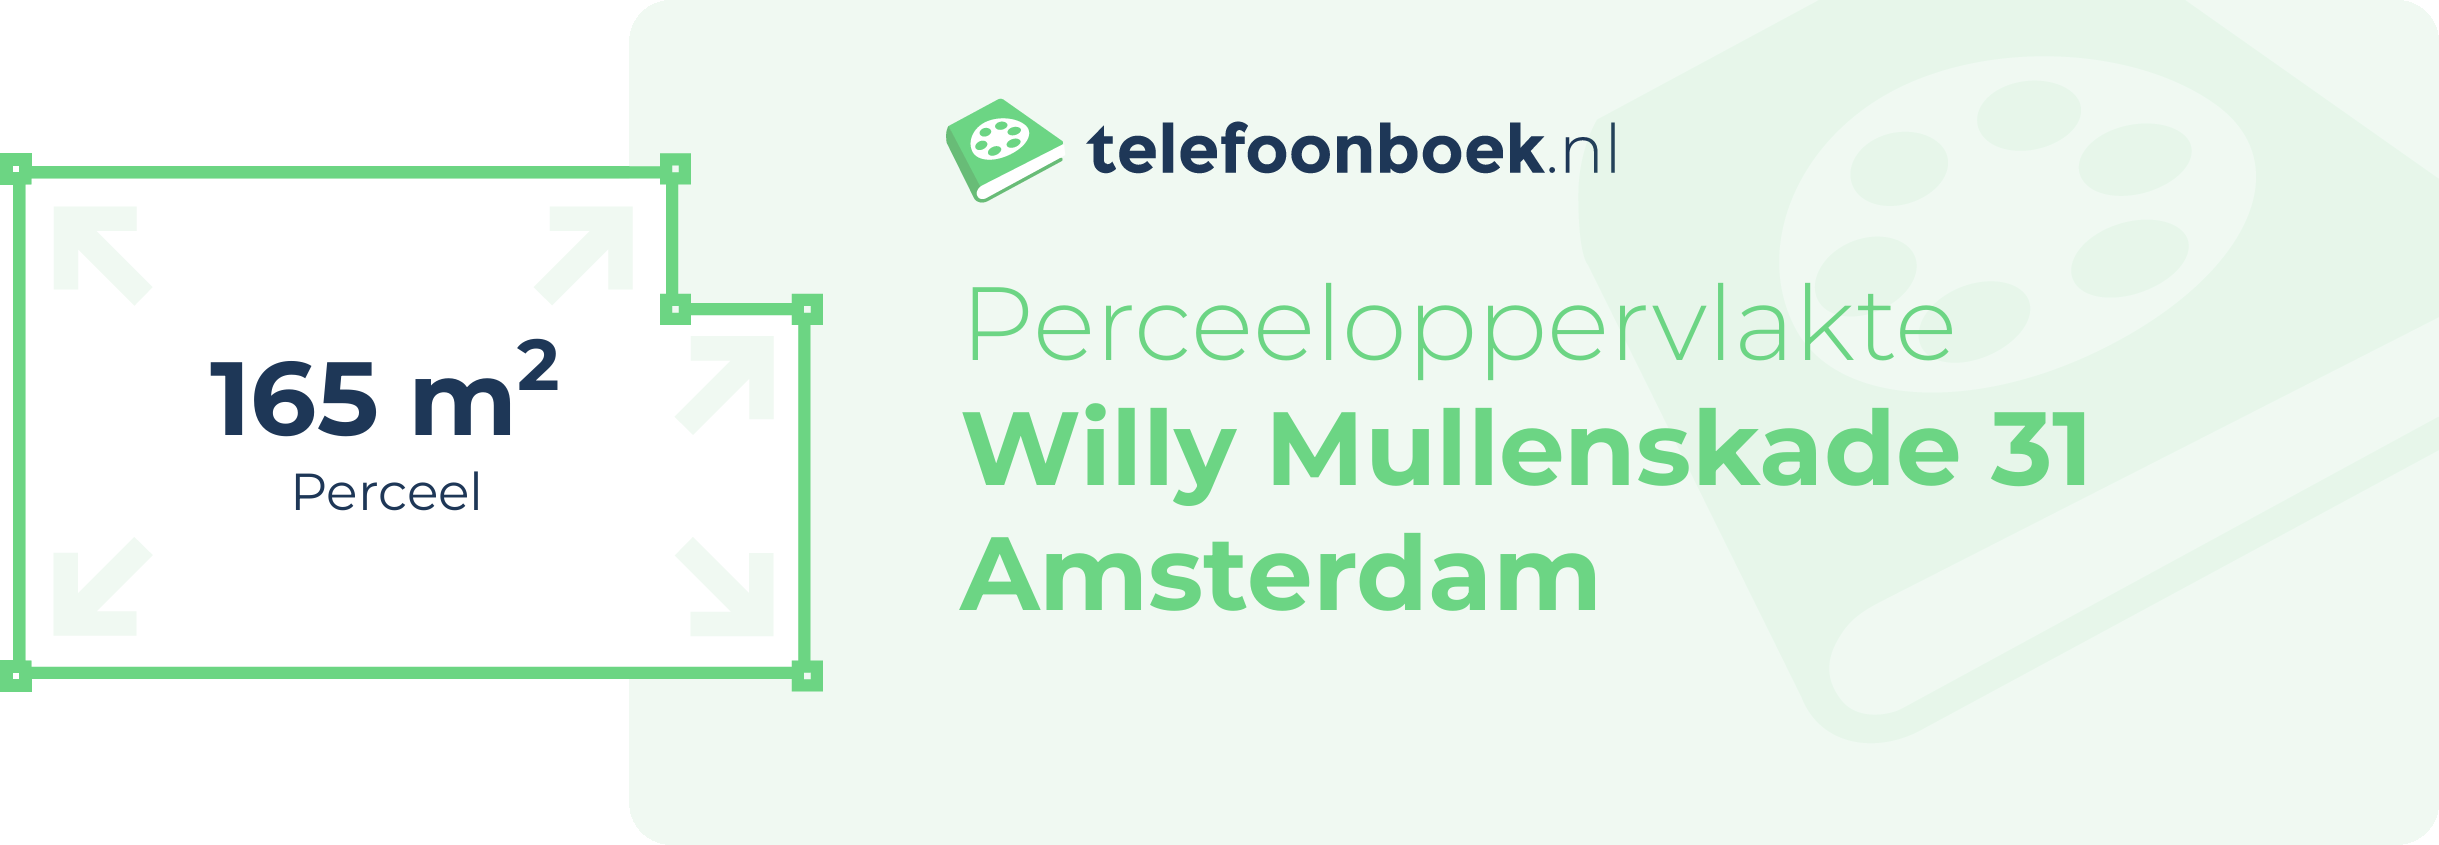 Perceeloppervlakte Willy Mullenskade 31 Amsterdam